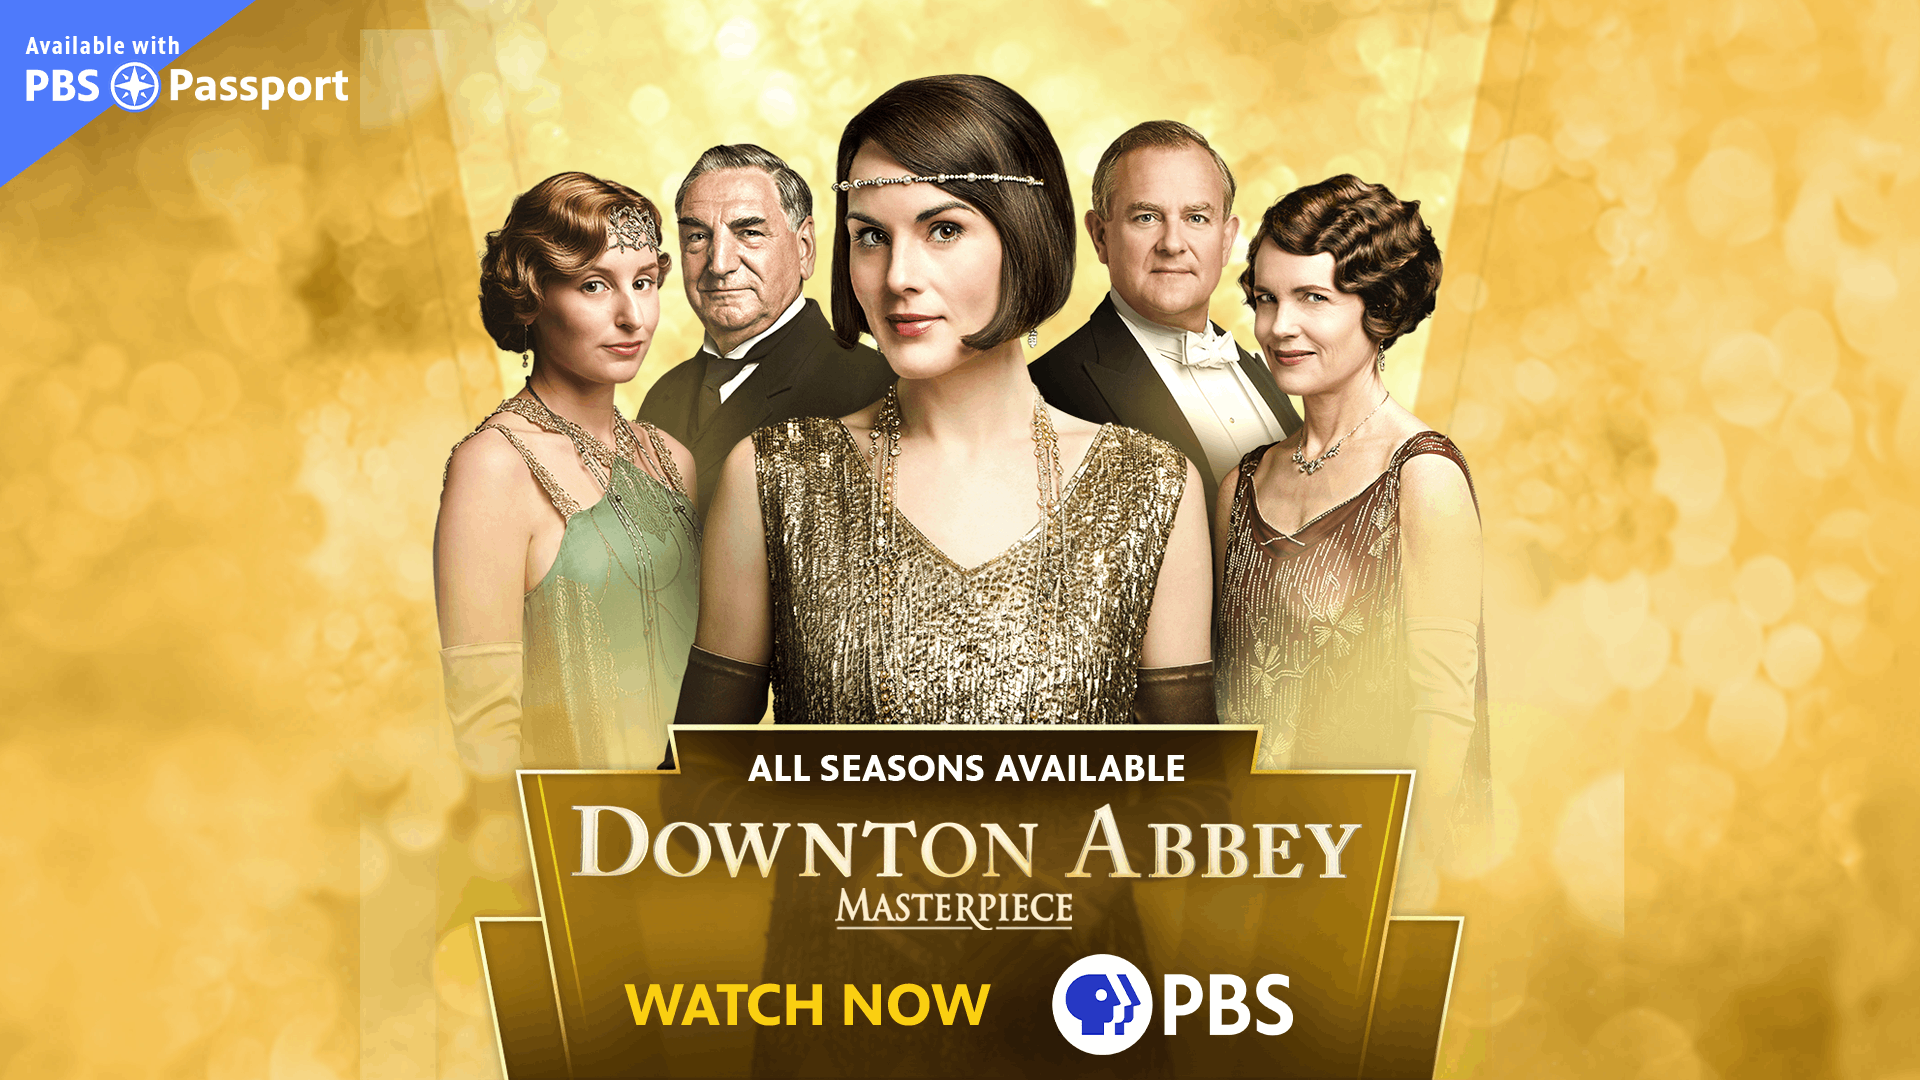 downton abbey season 5 poster